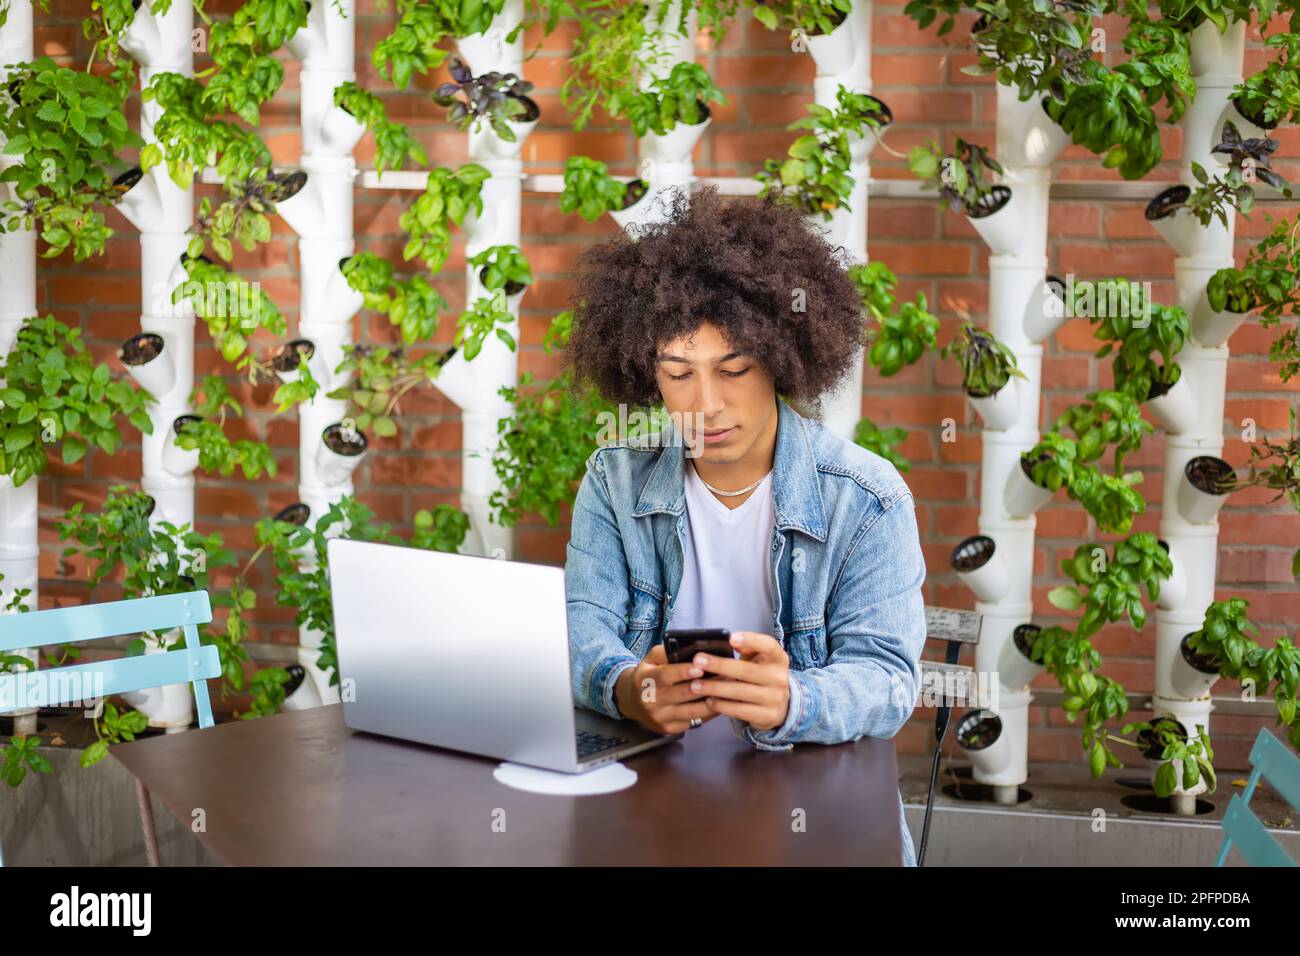 Seriöse, fokussierte ethnische Männer, die Laptop, Smartphone im Internet Café im Freien, umweltfreundlich mit Hydrofonsystemen. Kostenloser grüner, offener Platz Stockfoto